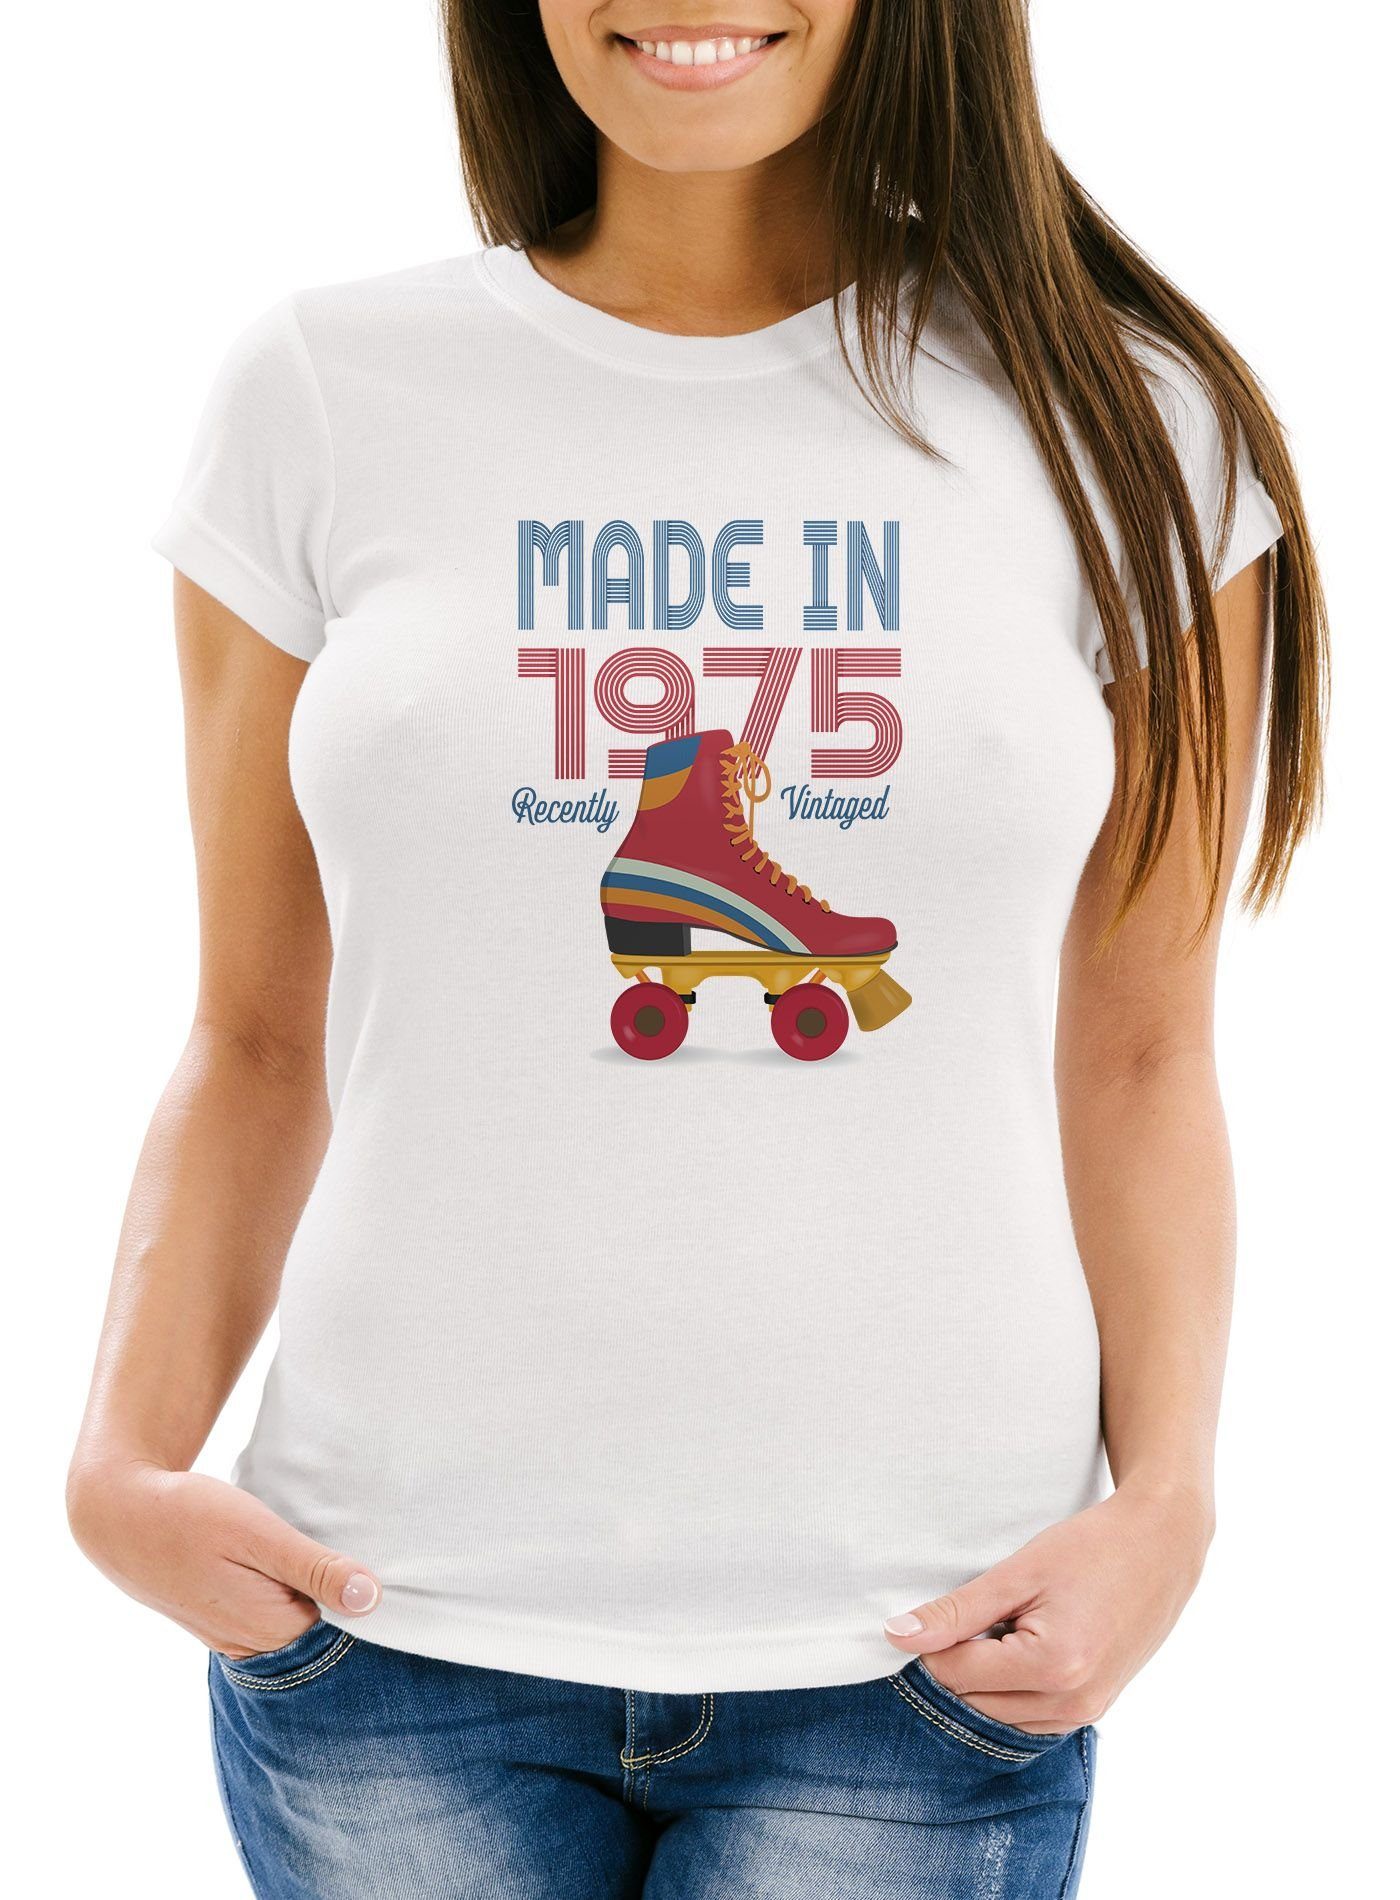 1975 weiß 70er mit Moonworks® T-Shirt Fit Print-Shirt Geschenk-Shirt Geburtstag Vintage Print Siebziger Jahre Damen Retro Slim MoonWorks